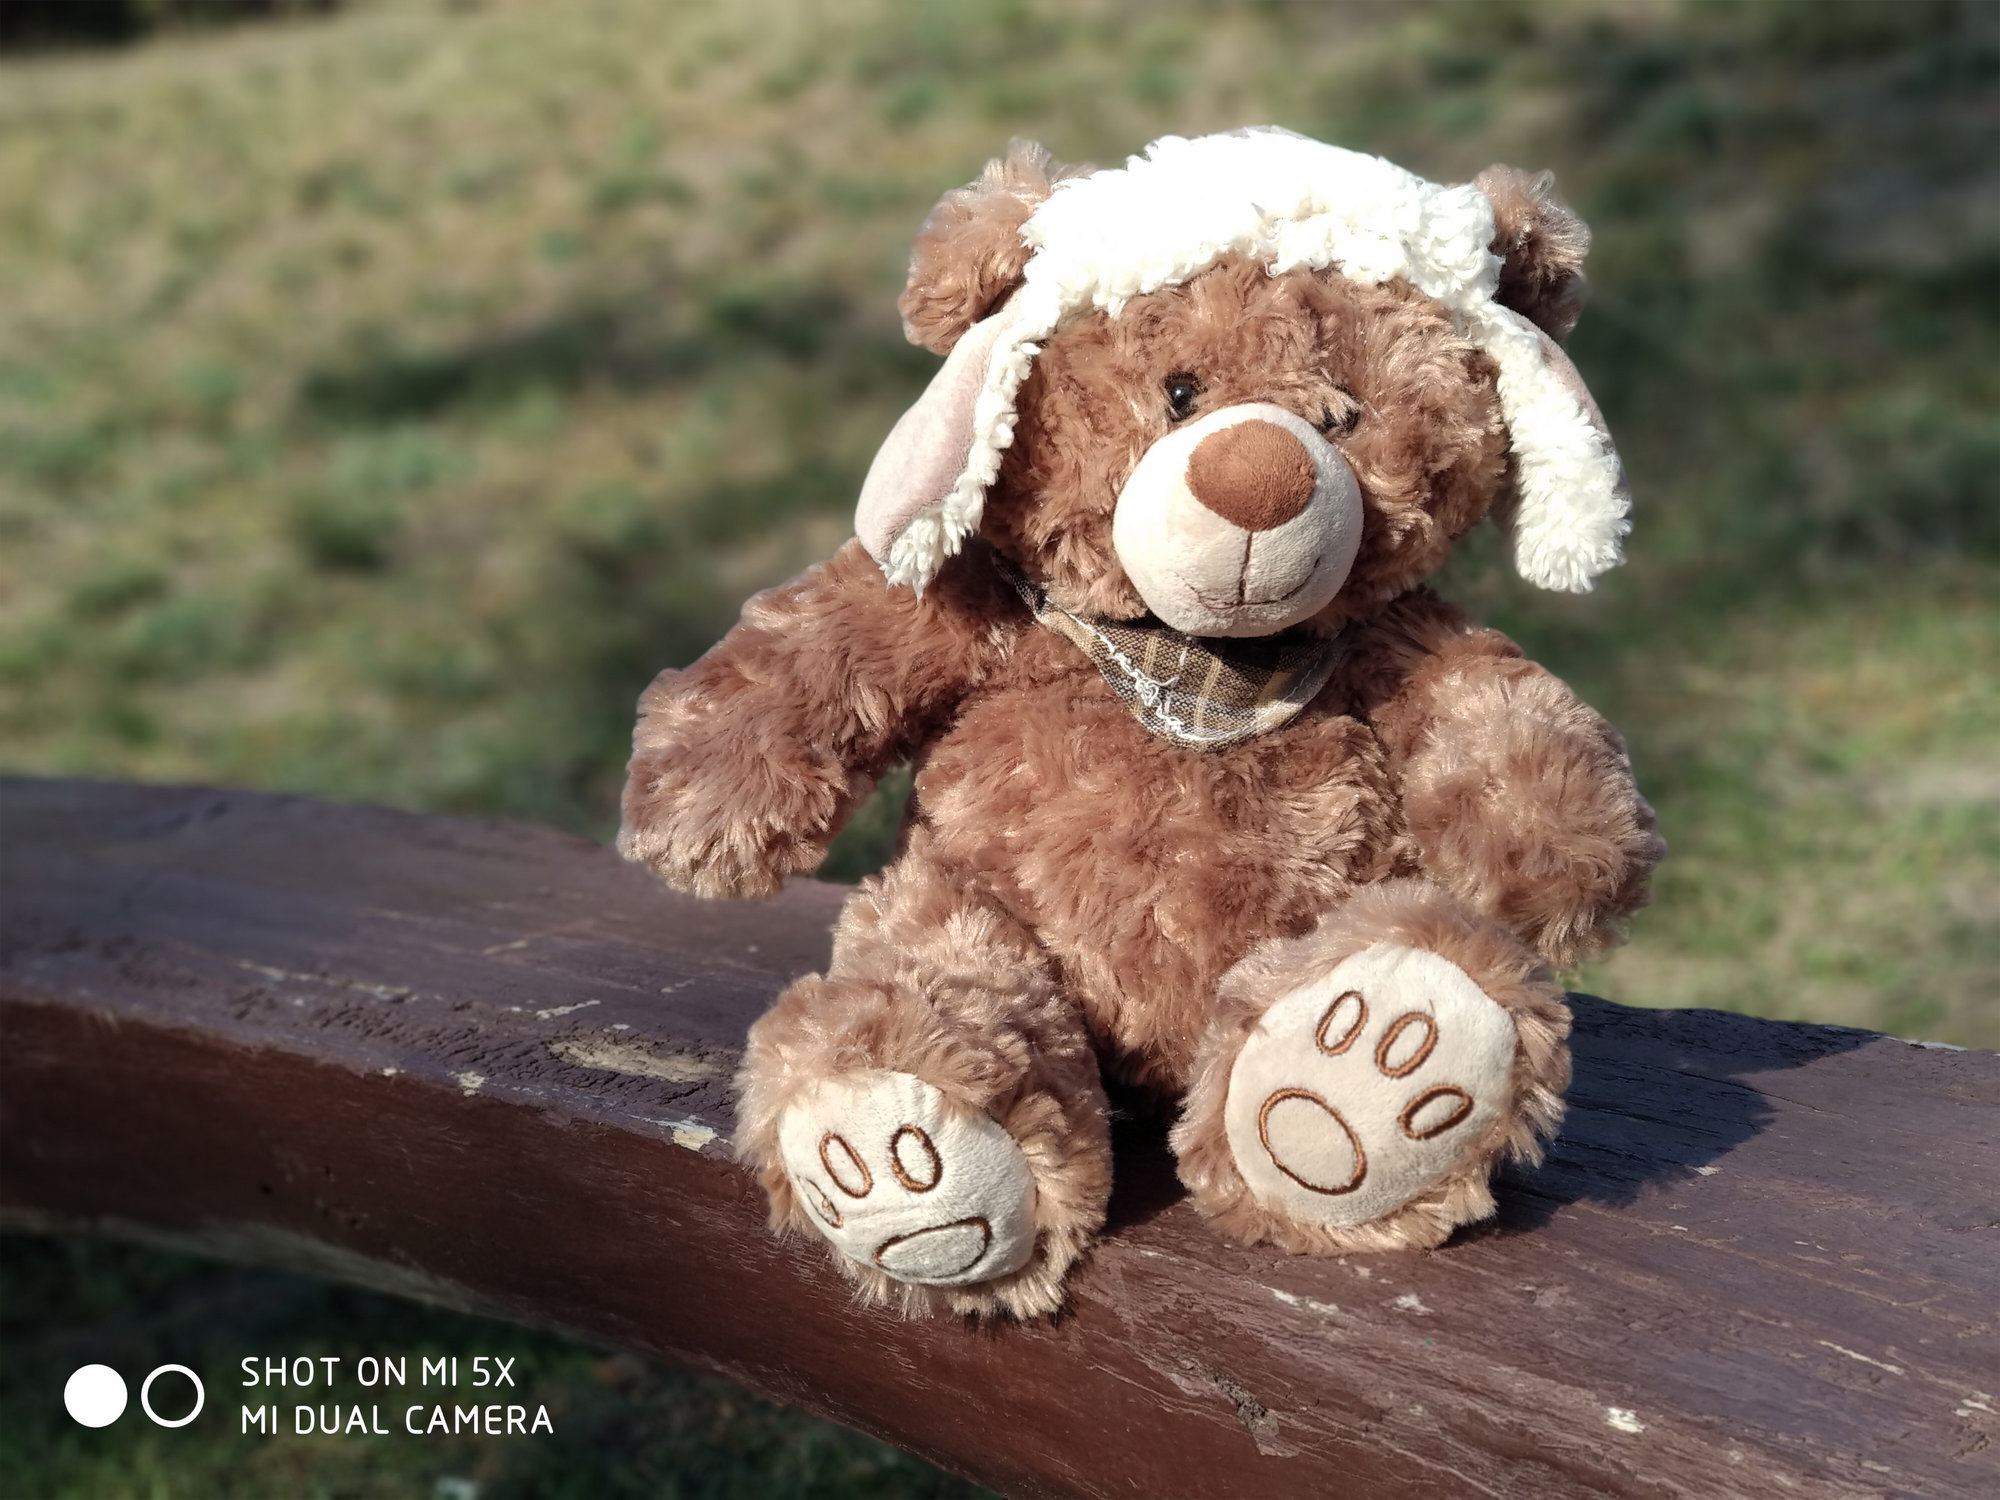 Медведь - пример фото на Xiaomi Mi 5x